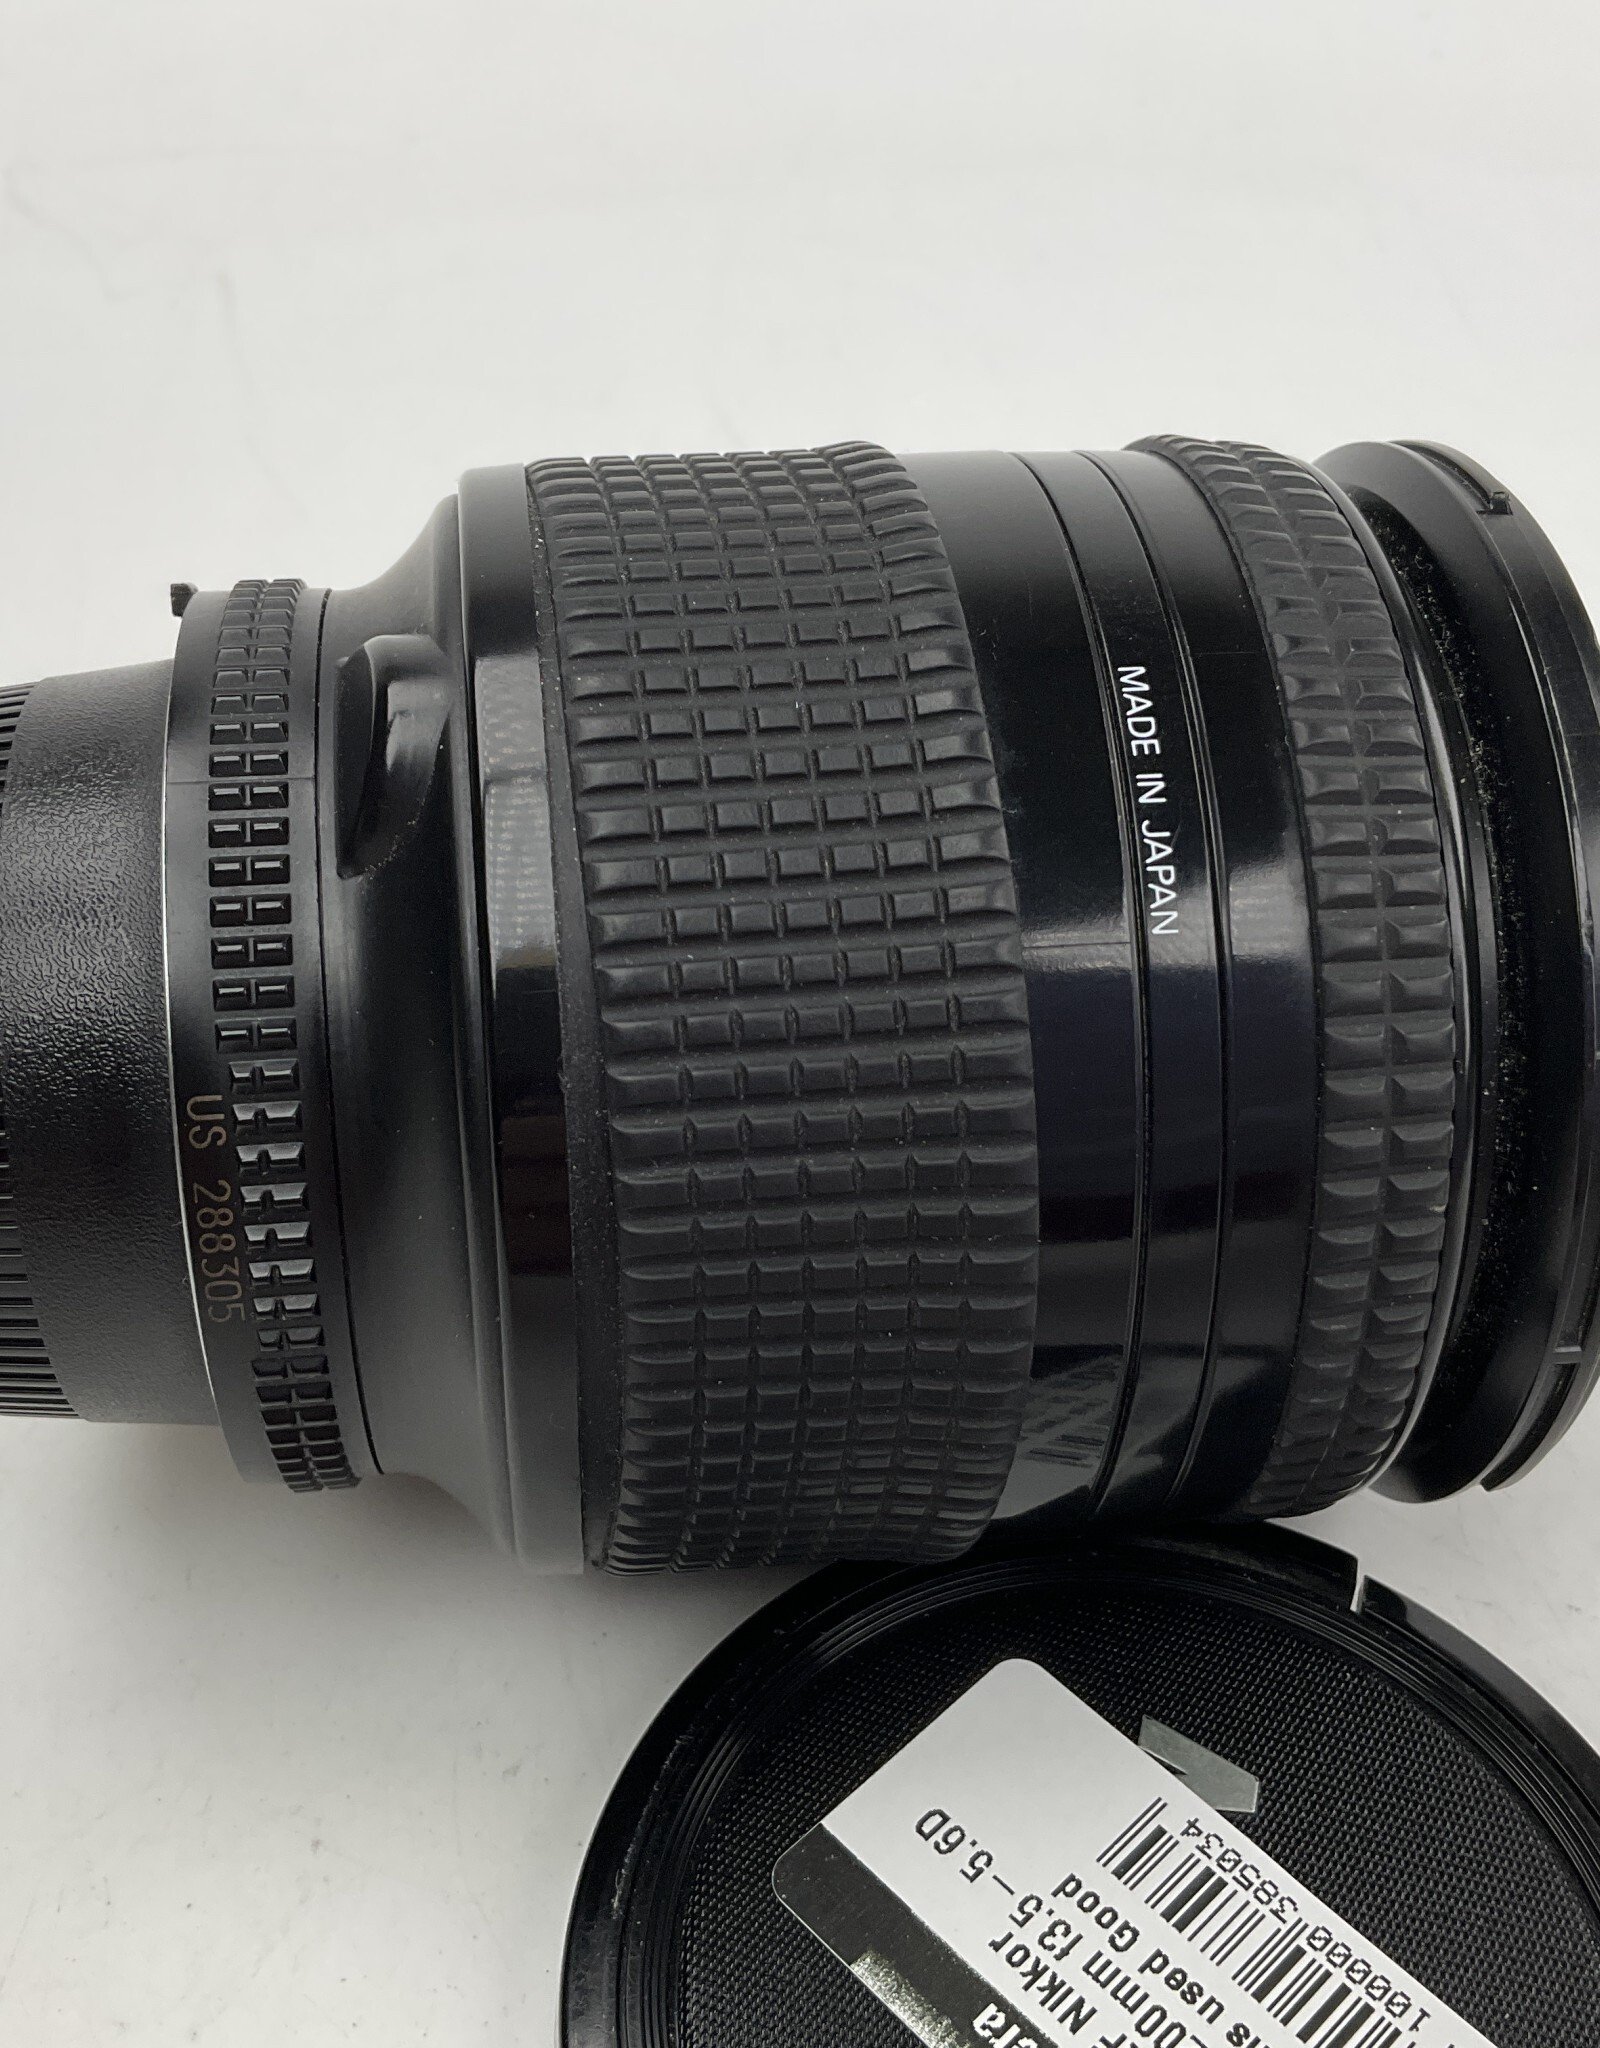 NIKON Nikon AF Nikkor 28-200mm f3.5-5.6D Lens used Good